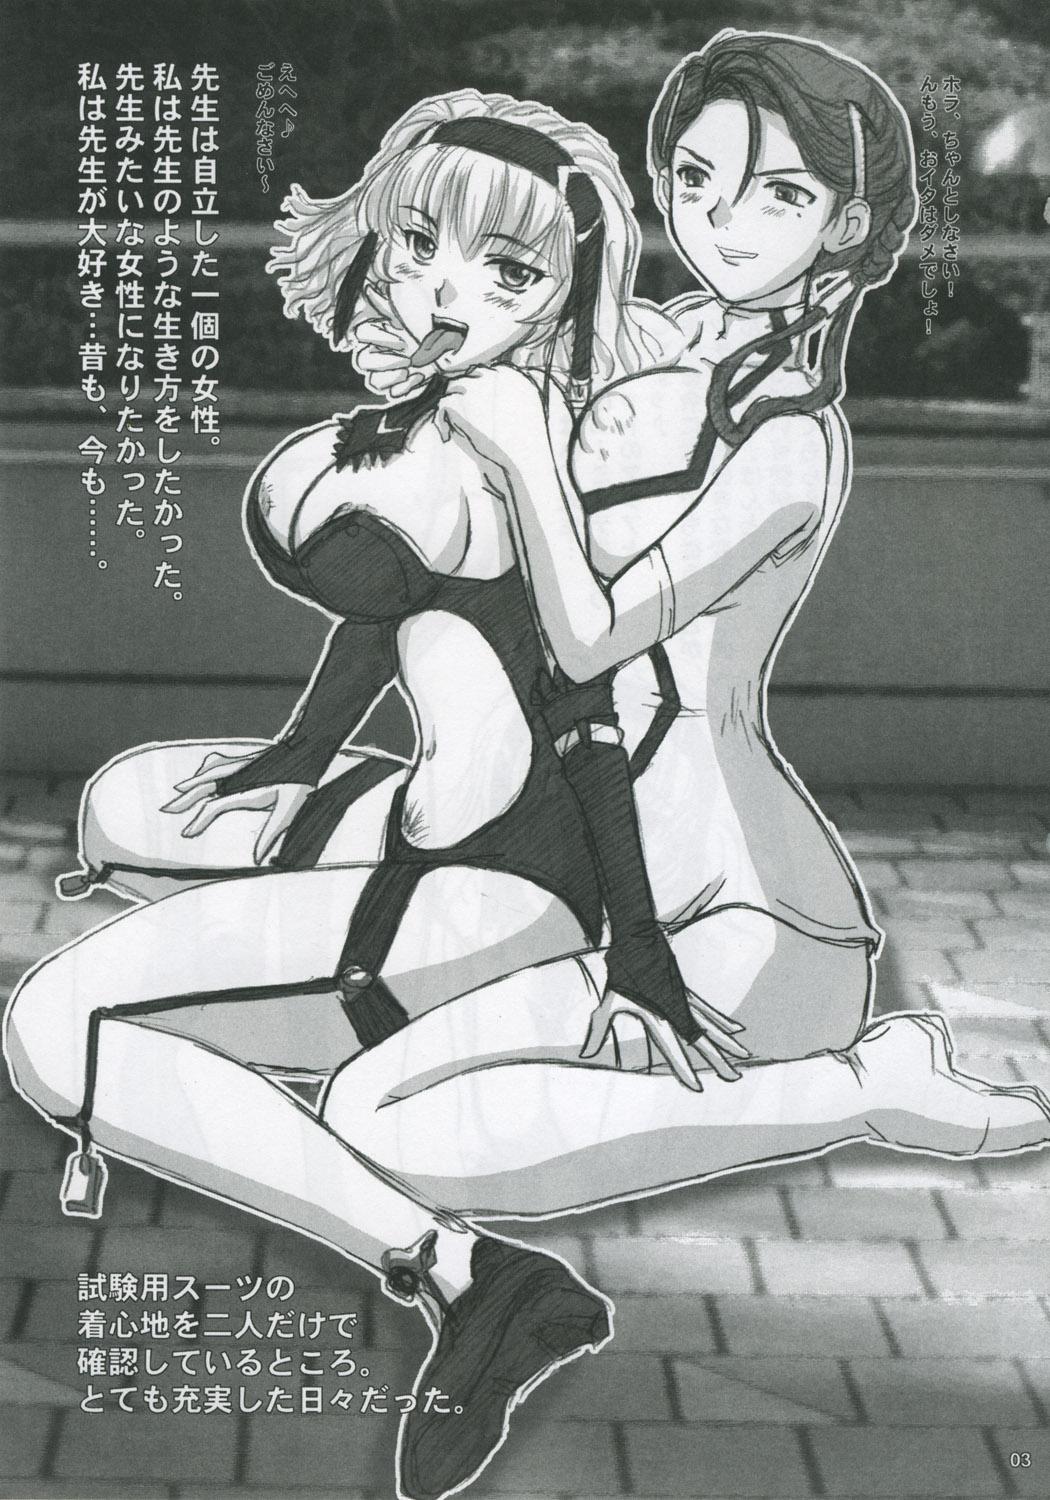 Hot Women Having Sex Iyashi no Megami e Sukui no Uta wo - Super robot wars Gear fighter dendoh Semen - Page 2